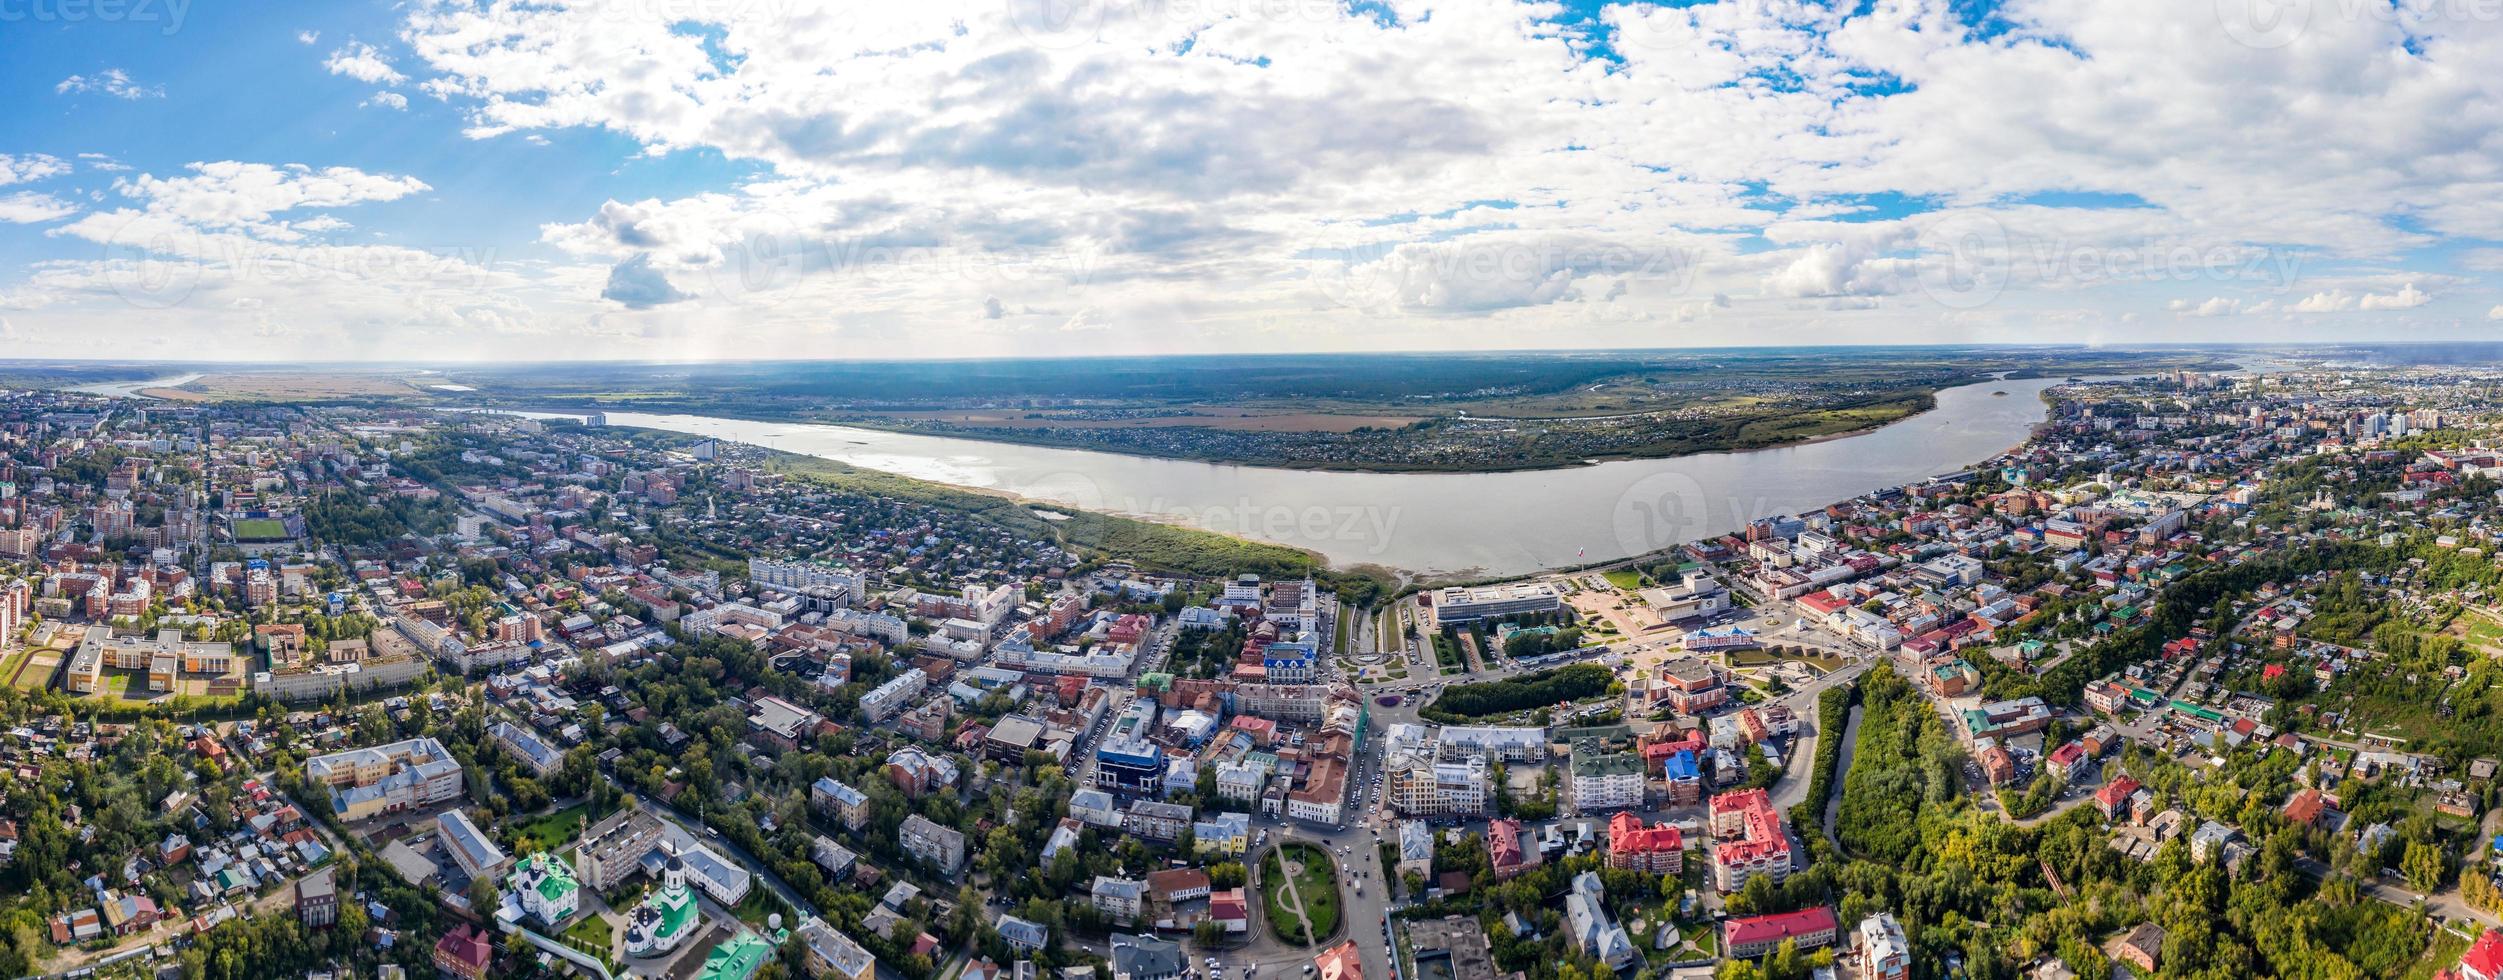 vue aérienne de la ville de tomsk et de la rivière tom en sibérie, russie photo